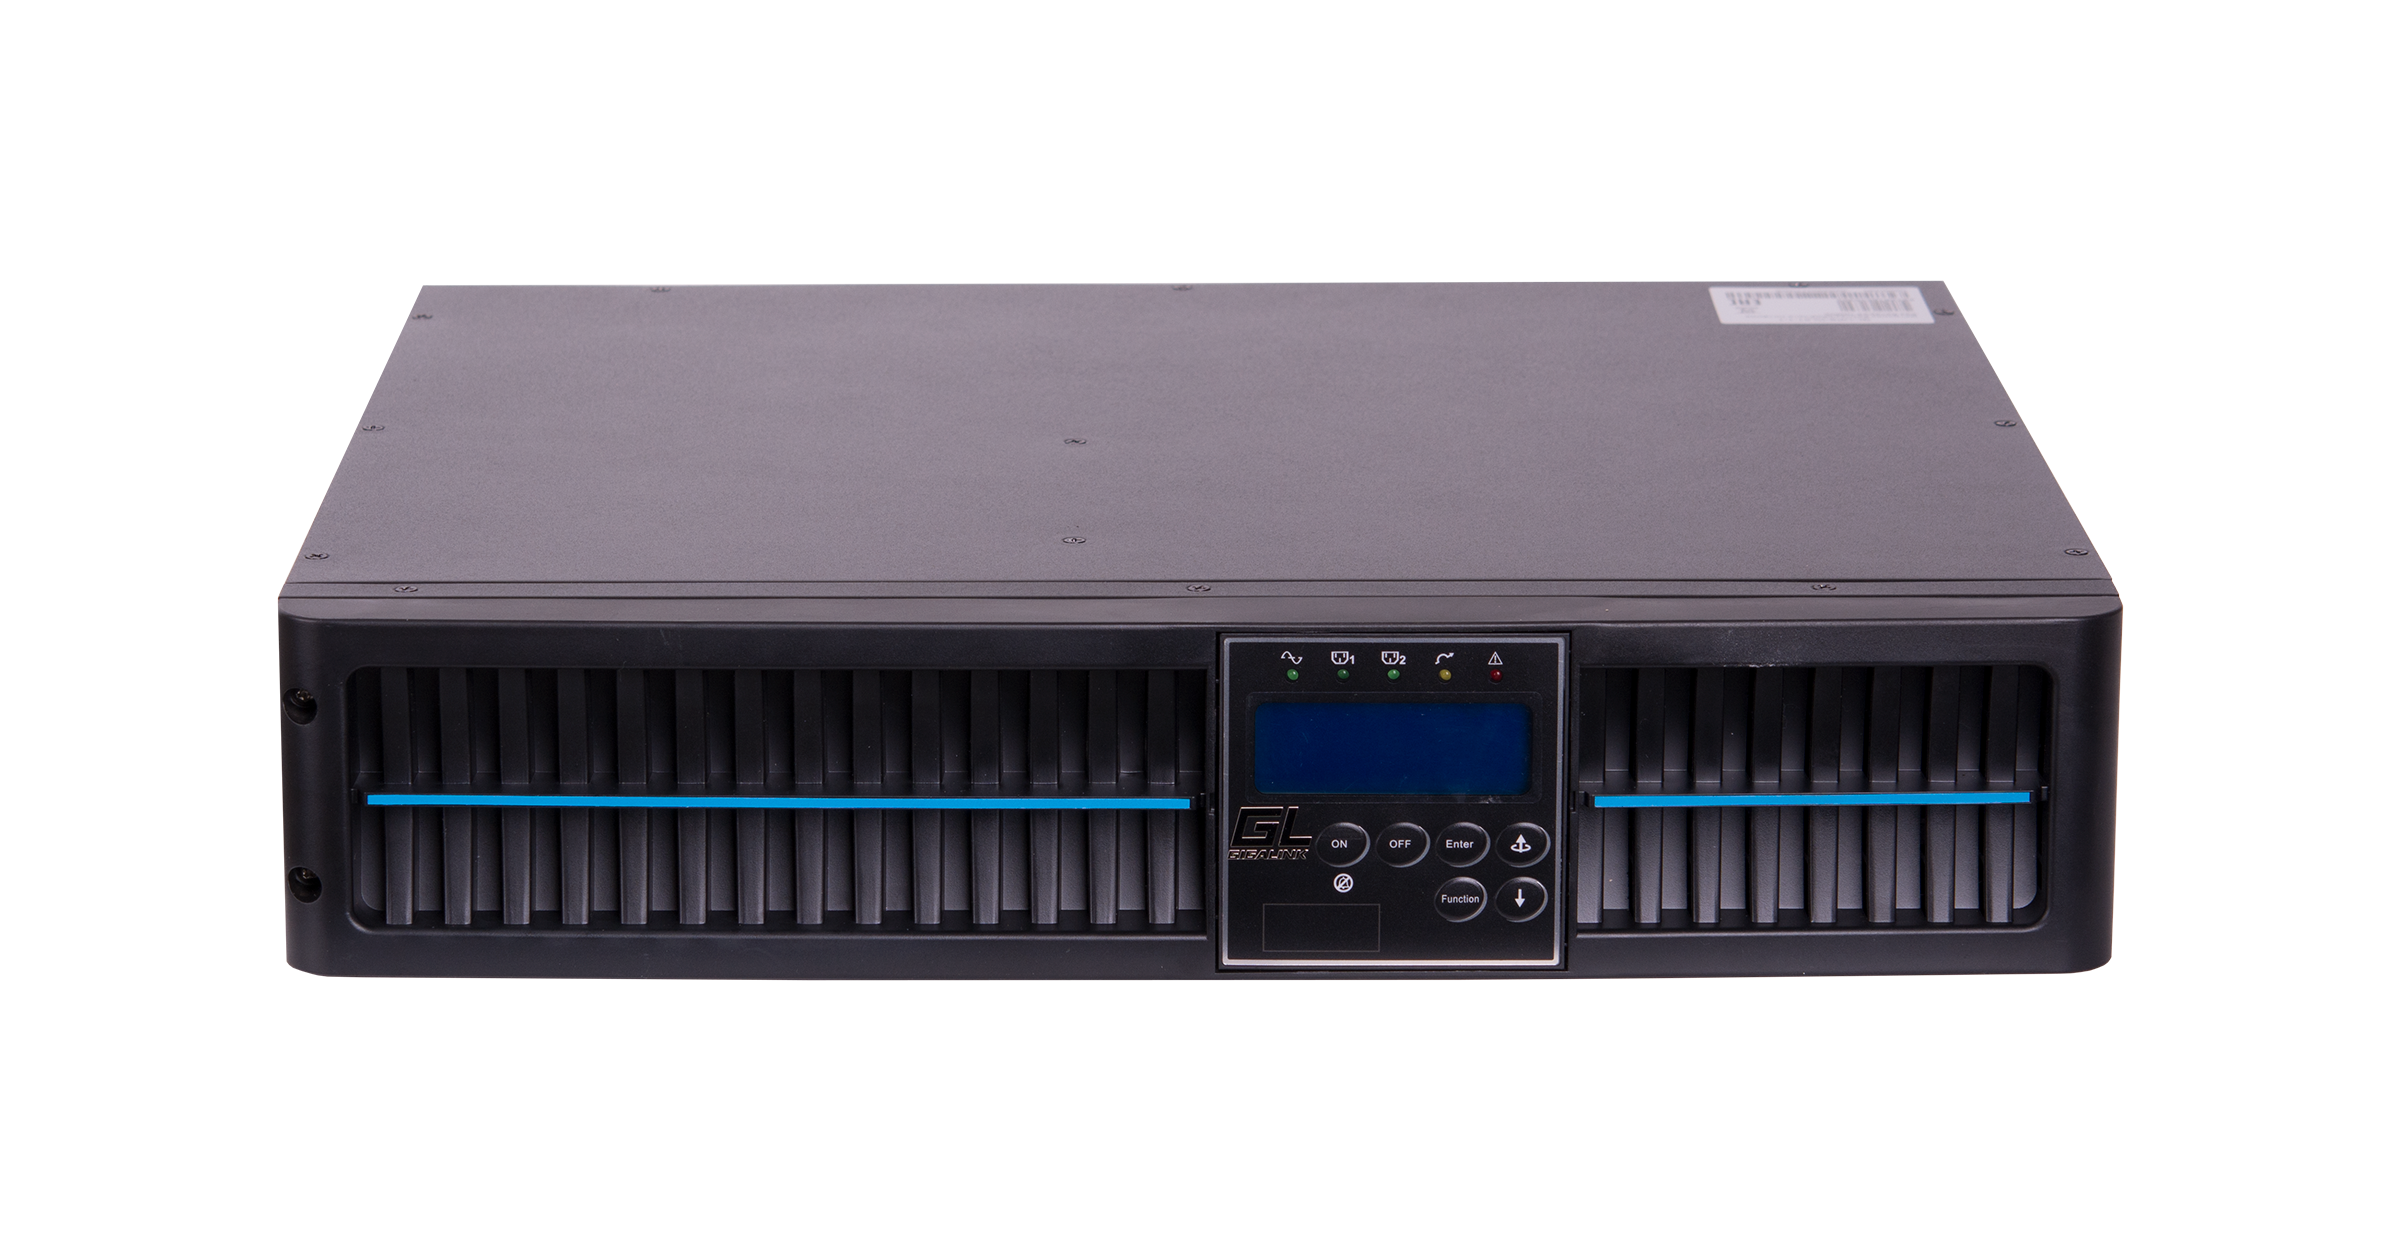 ИБП GIGALINK GL-UPS-OL01-1-1/10A, 1000VA, 900W, IEC, розеток - 3, USB, черный (без аккумуляторов)